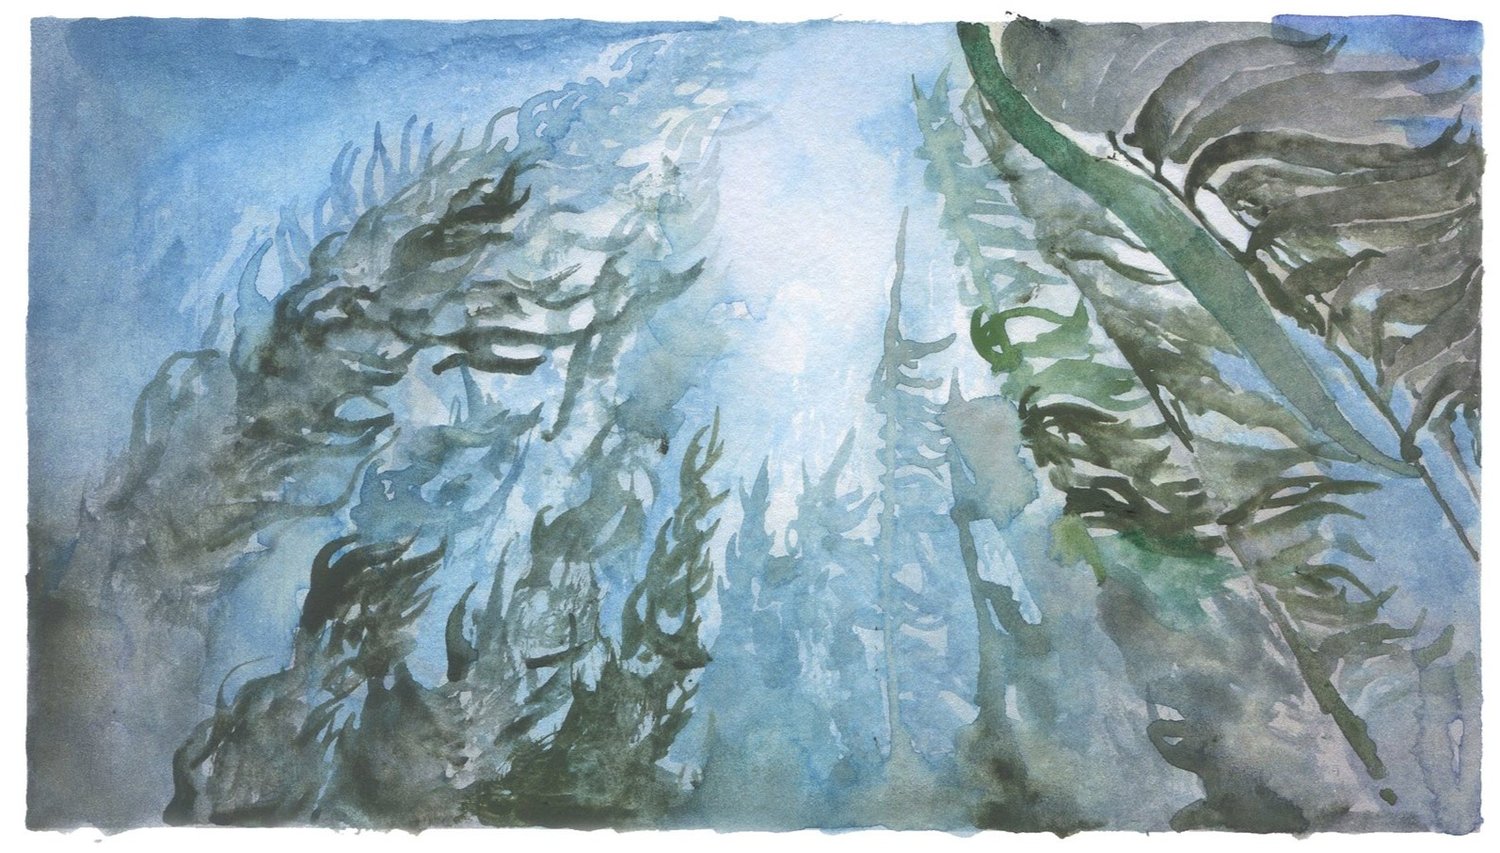 Painting of kelp as seen from underwater.